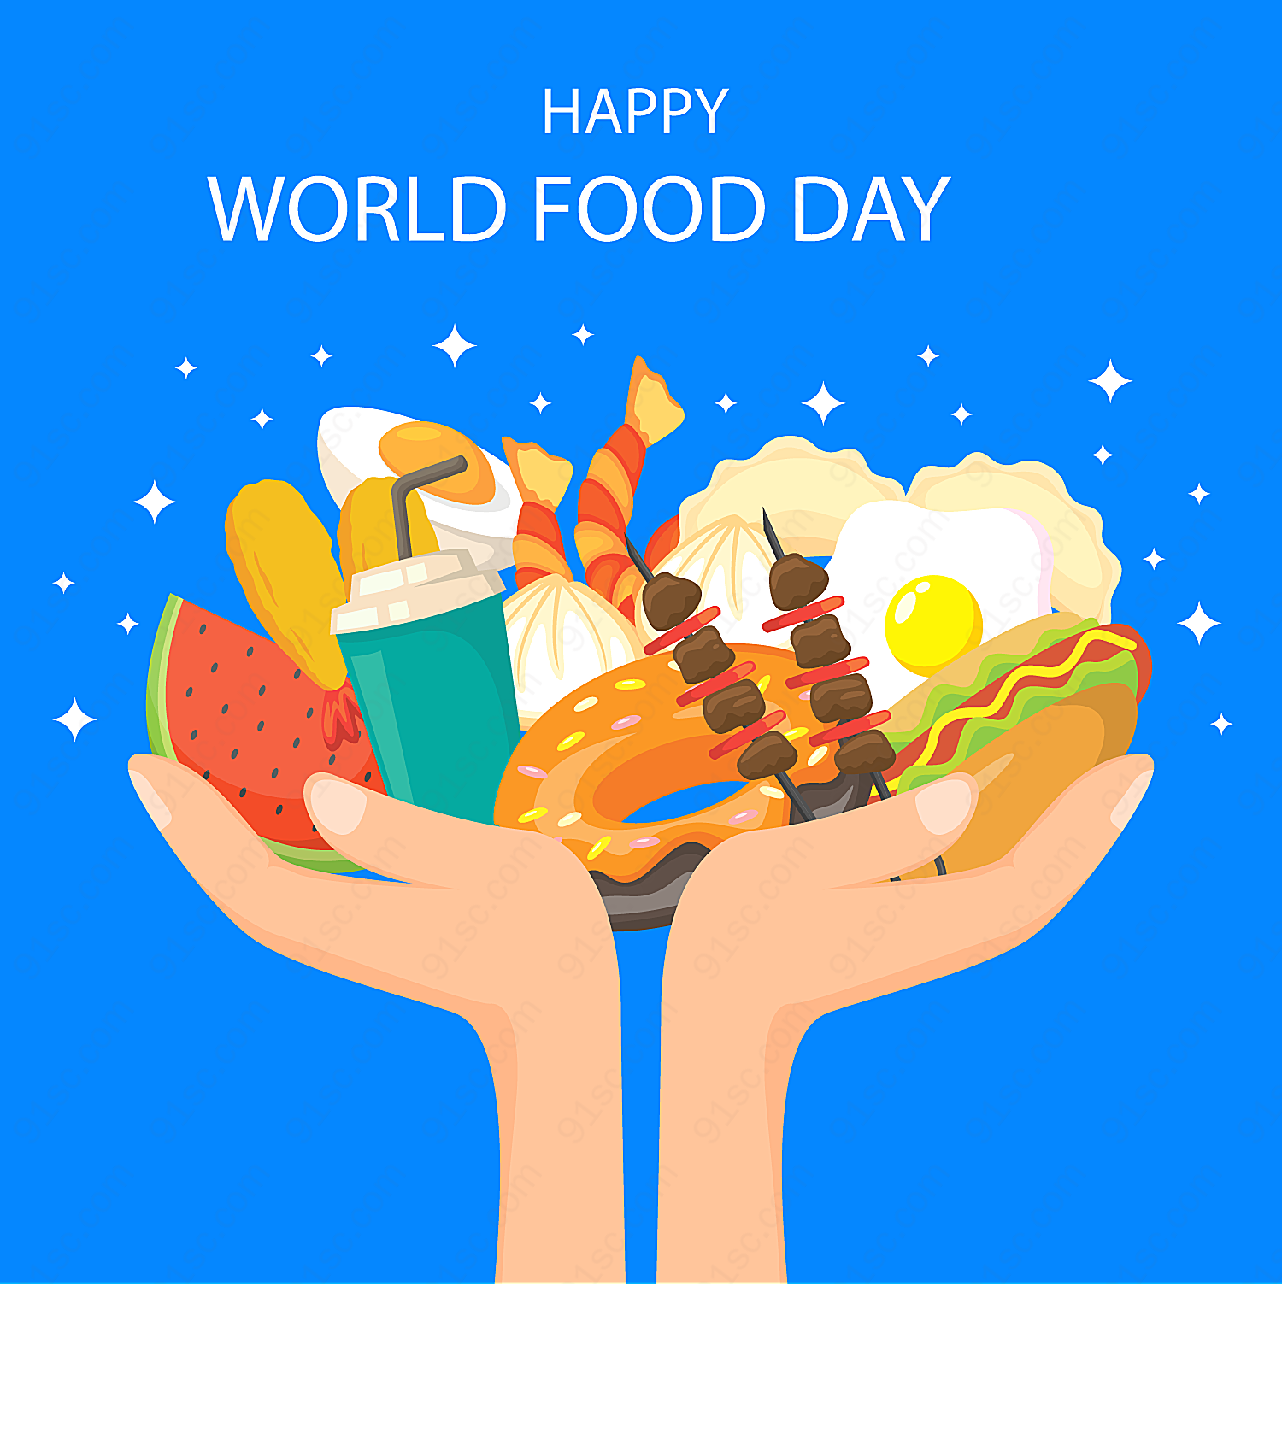 世界粮食日捧起食物矢量节日其它